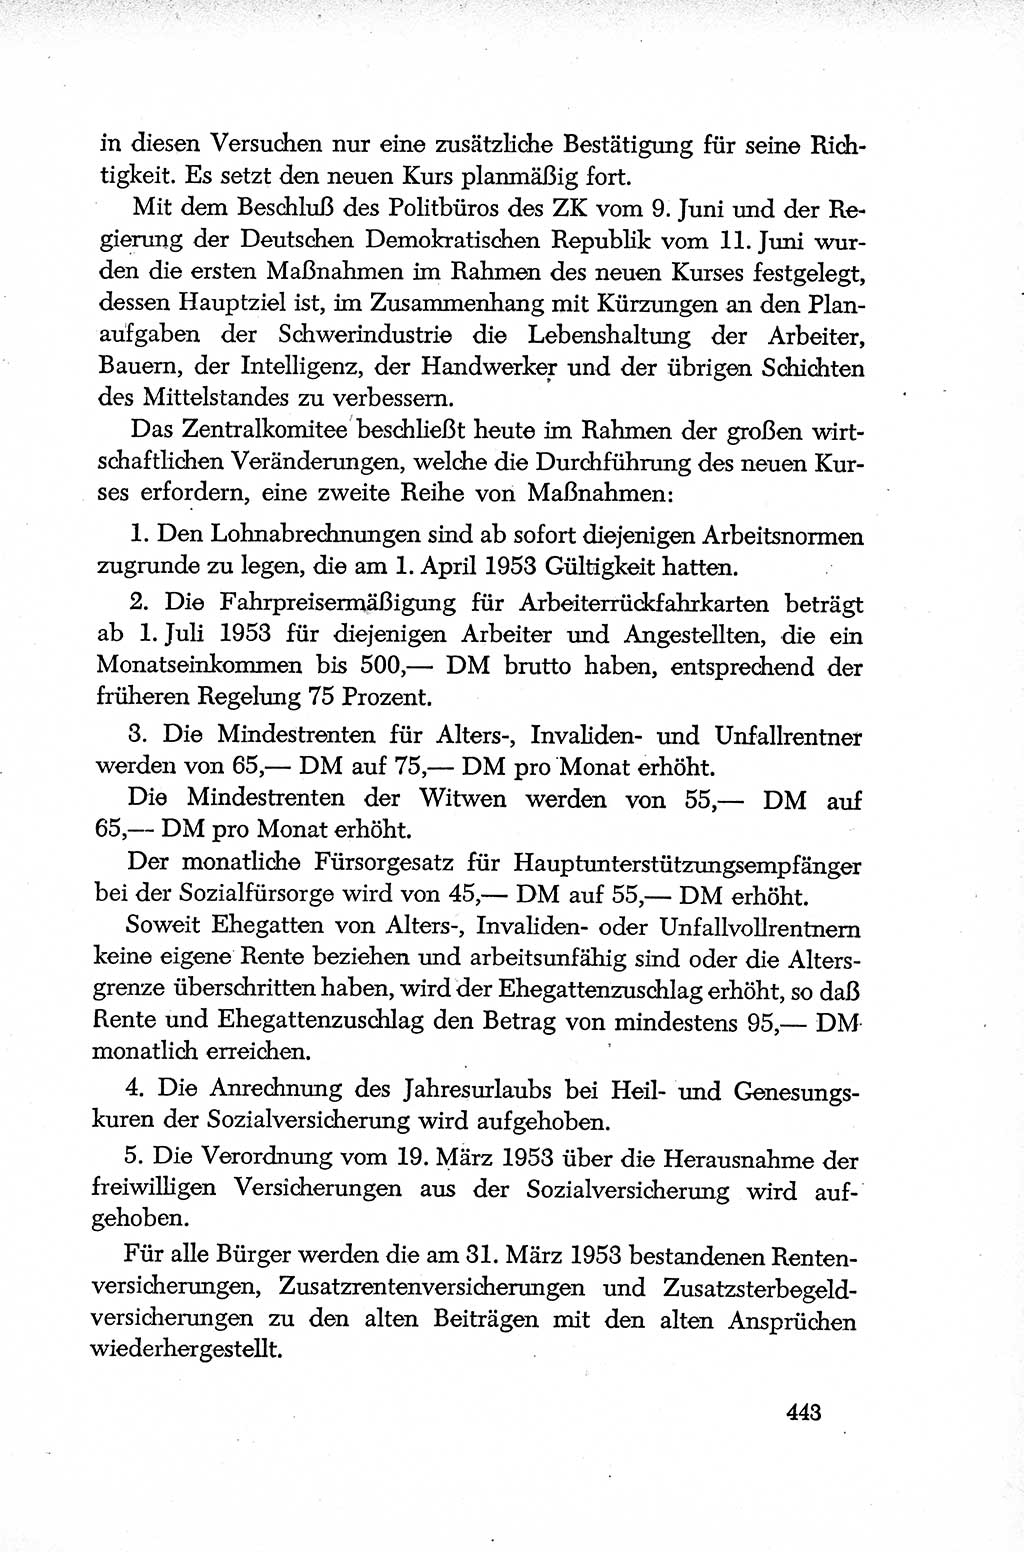 Dokumente der Sozialistischen Einheitspartei Deutschlands (SED) [Deutsche Demokratische Republik (DDR)] 1952-1953, Seite 443 (Dok. SED DDR 1952-1953, S. 443)